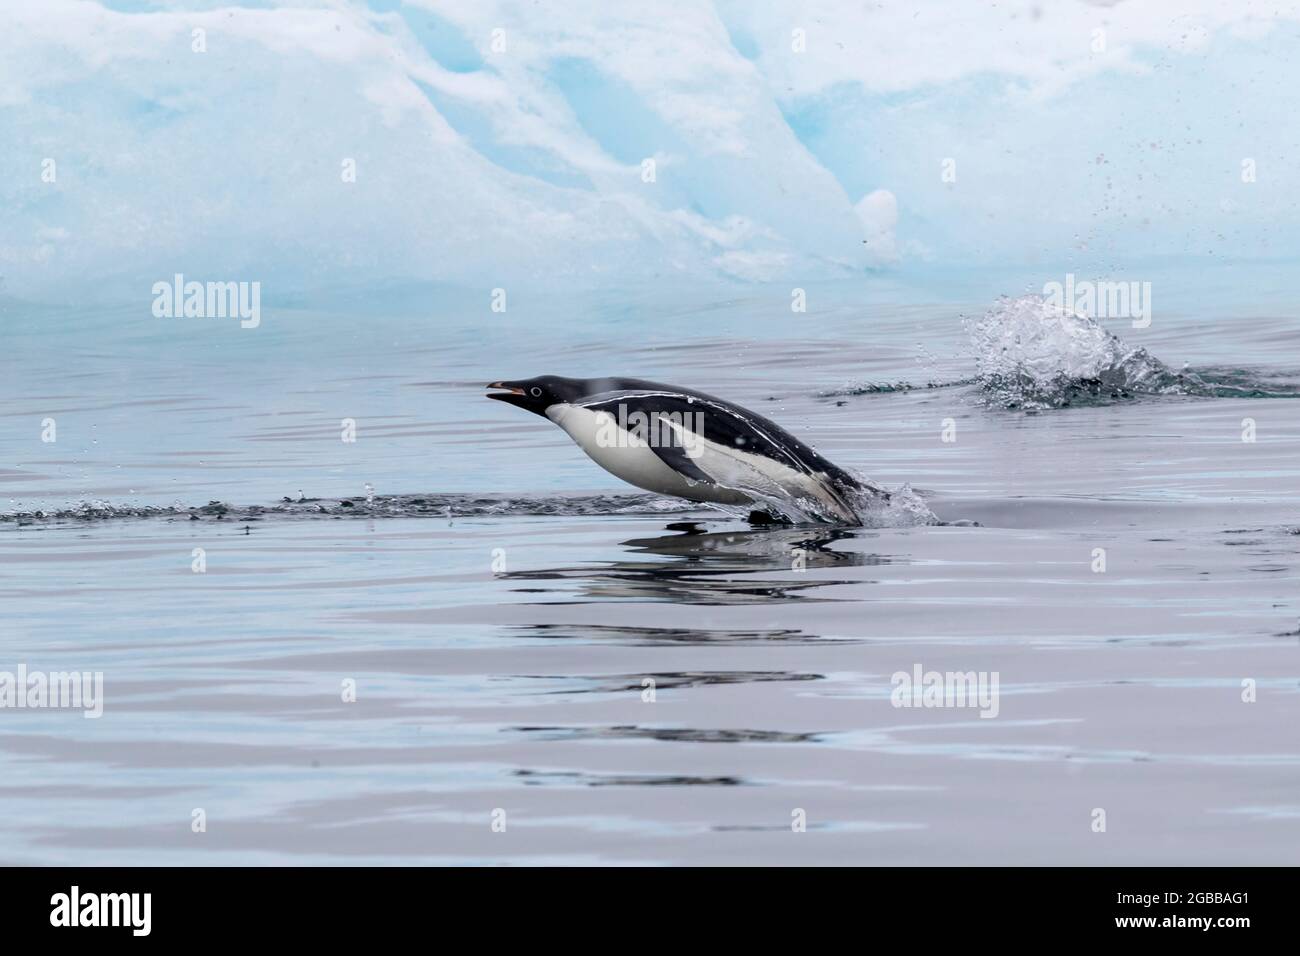 Pingouin d'Adelie (Pygoscelis adeliae), marsouin dans la mer dans le détroit de l'Antarctique, Péninsule de la Trinité, Antarctique, régions polaires Banque D'Images